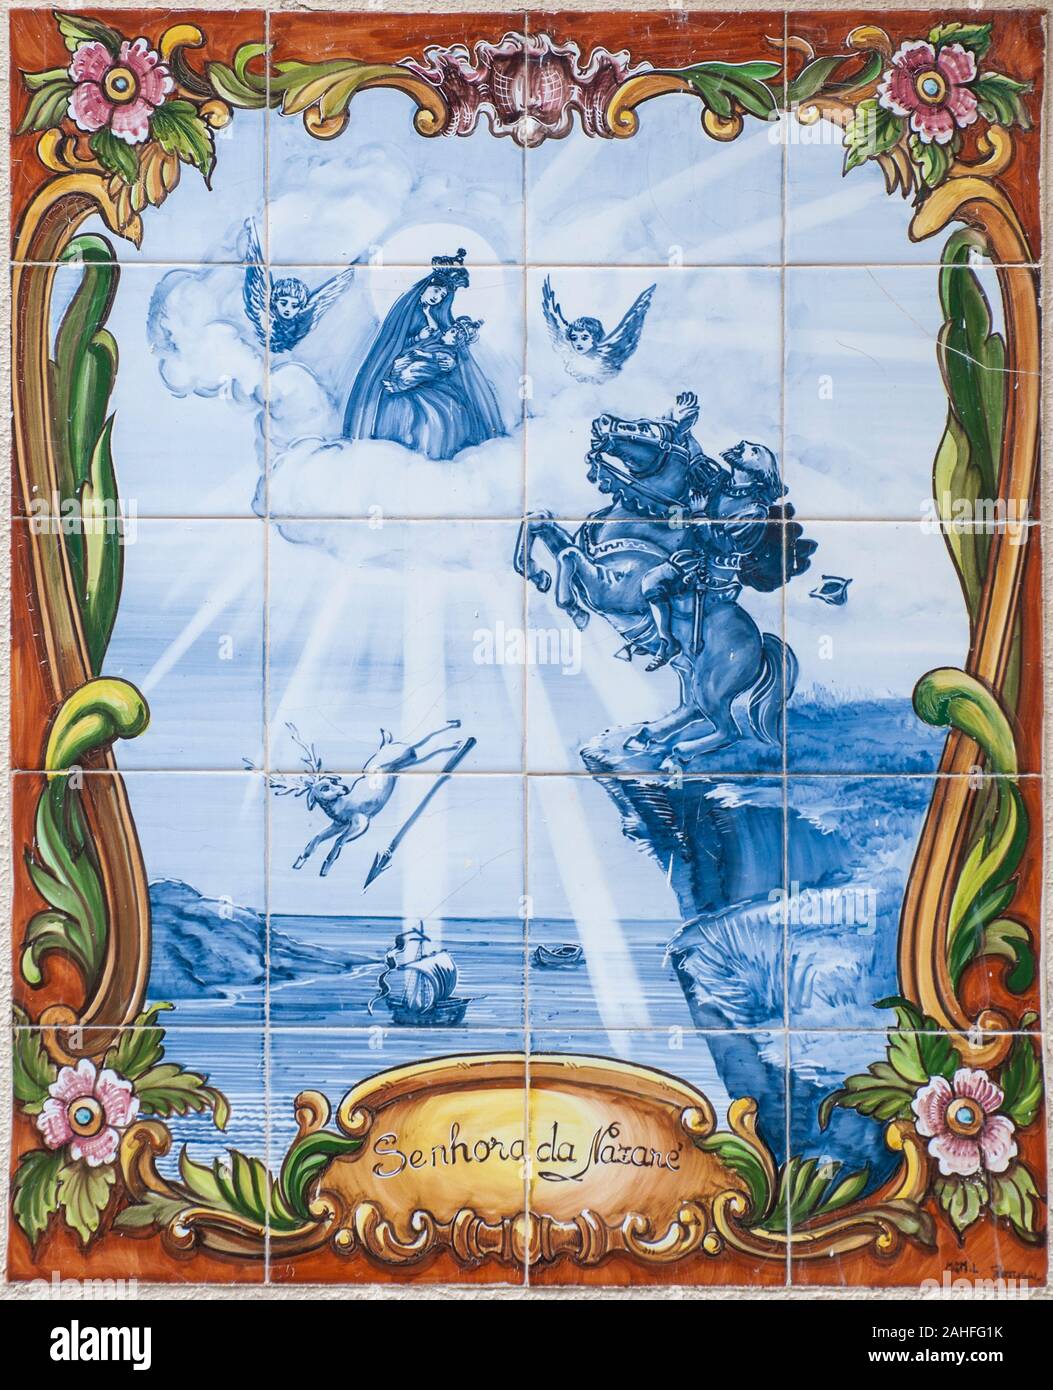 Christlich-religiöse Kunst in handbemalten Keramikfliesen. Sinhora Da Nazare (Unsere Liebe Frau von Nazareth) in Nazare, Portugal fotografiert. Stockfoto